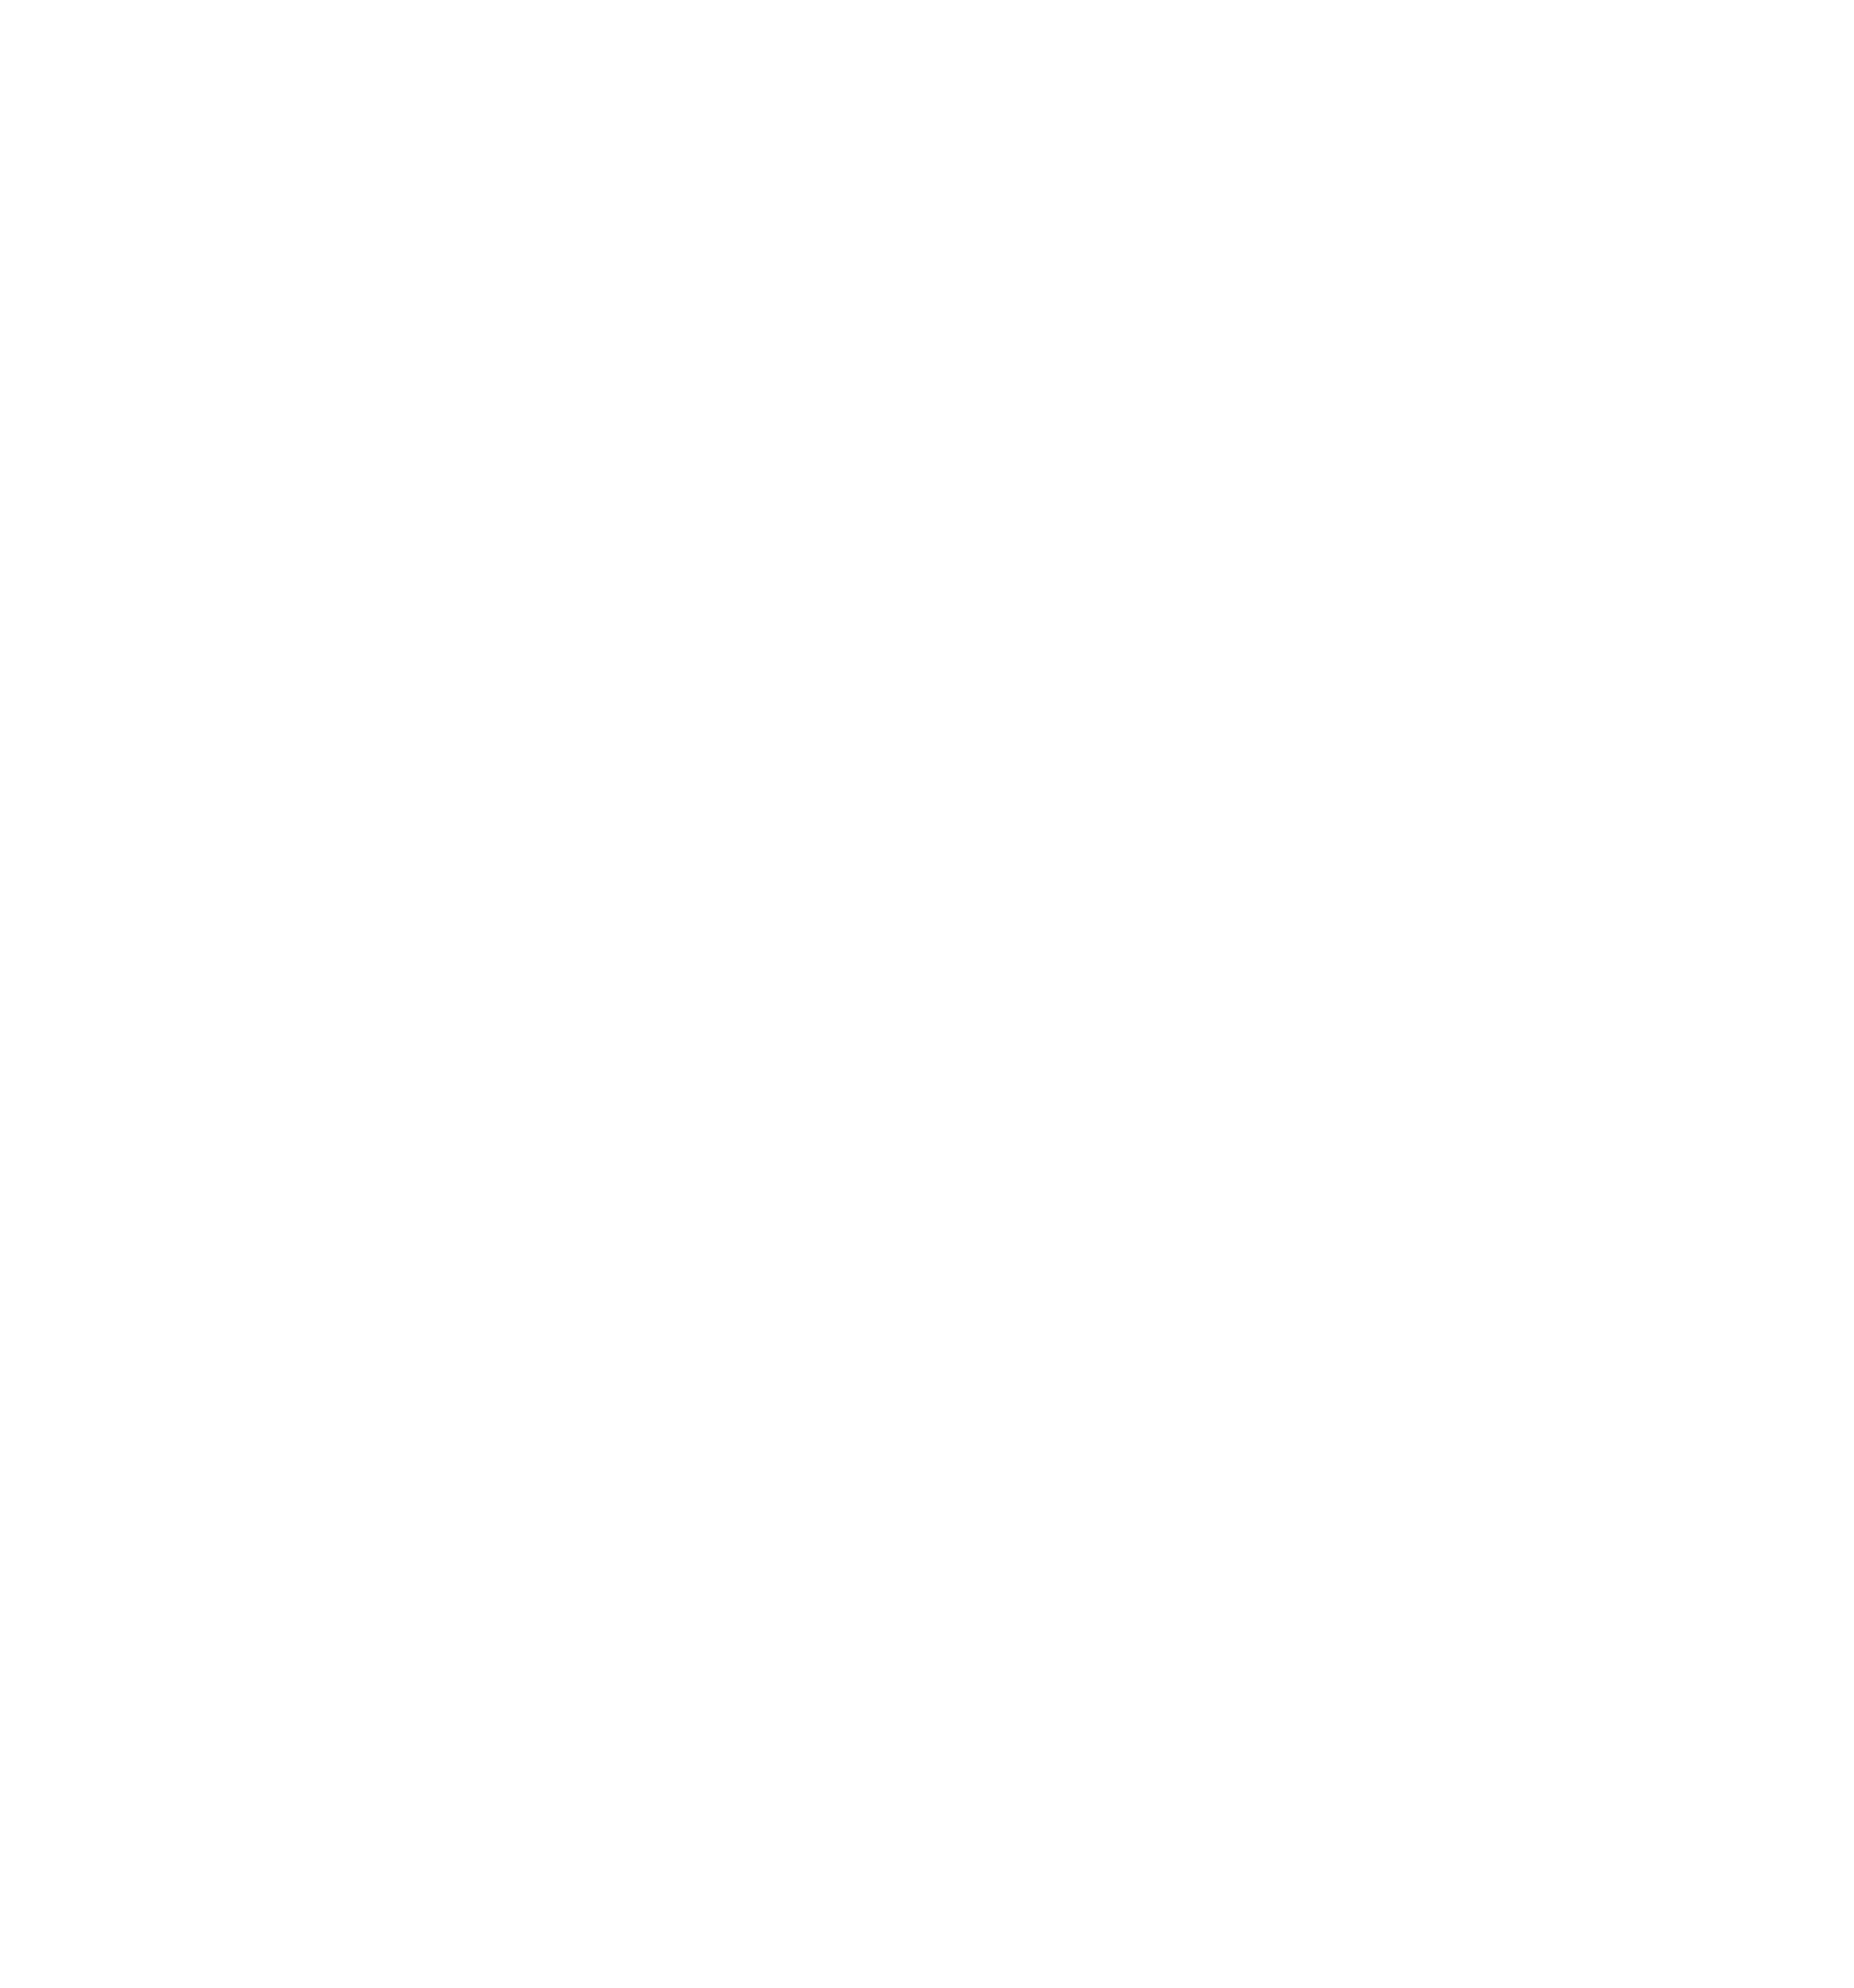 Tilmor logo